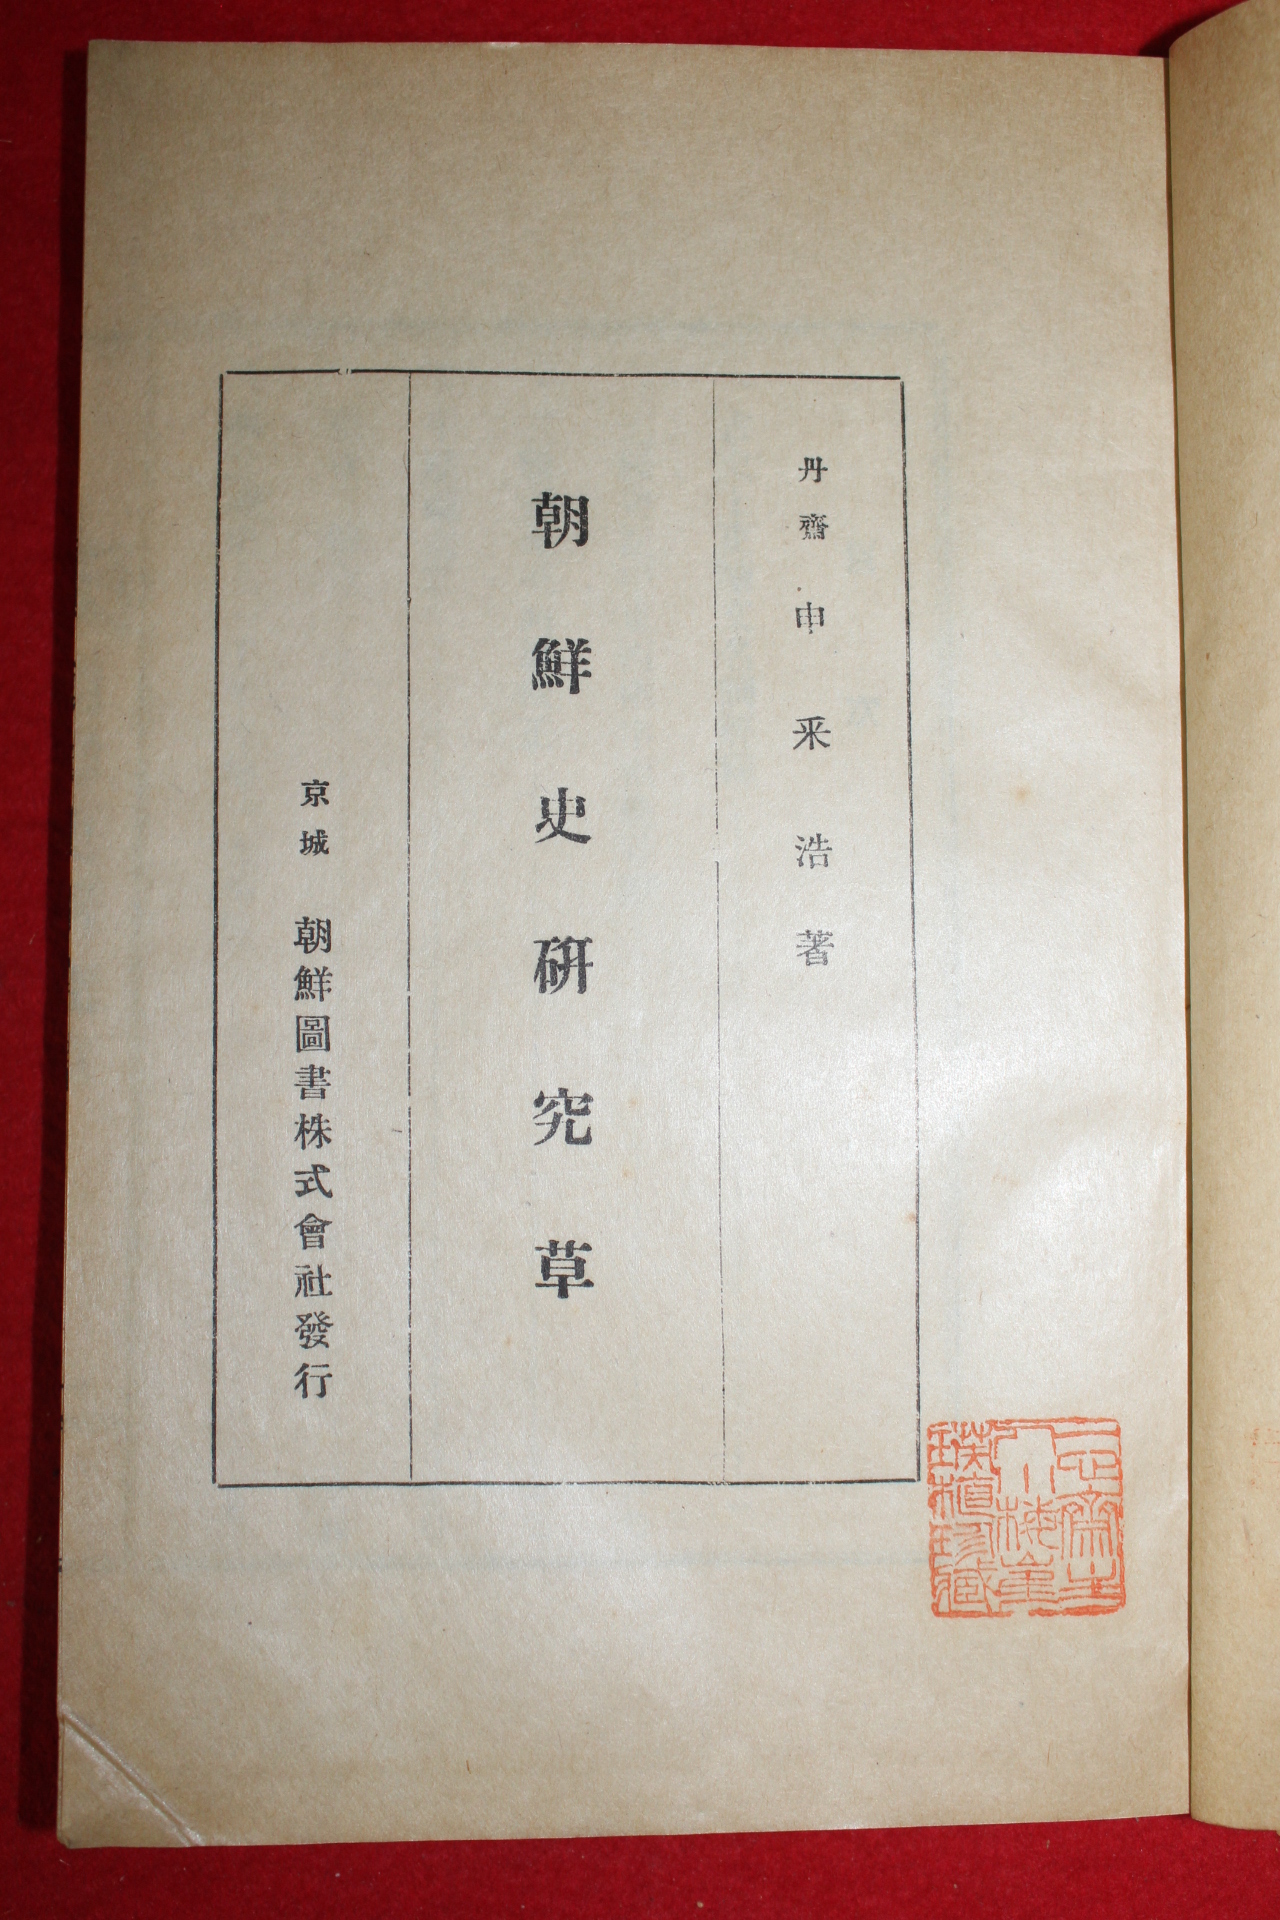 1929년(소화4년)초판 신채호(申采浩) 조선사연구초(朝鮮史硏究草)